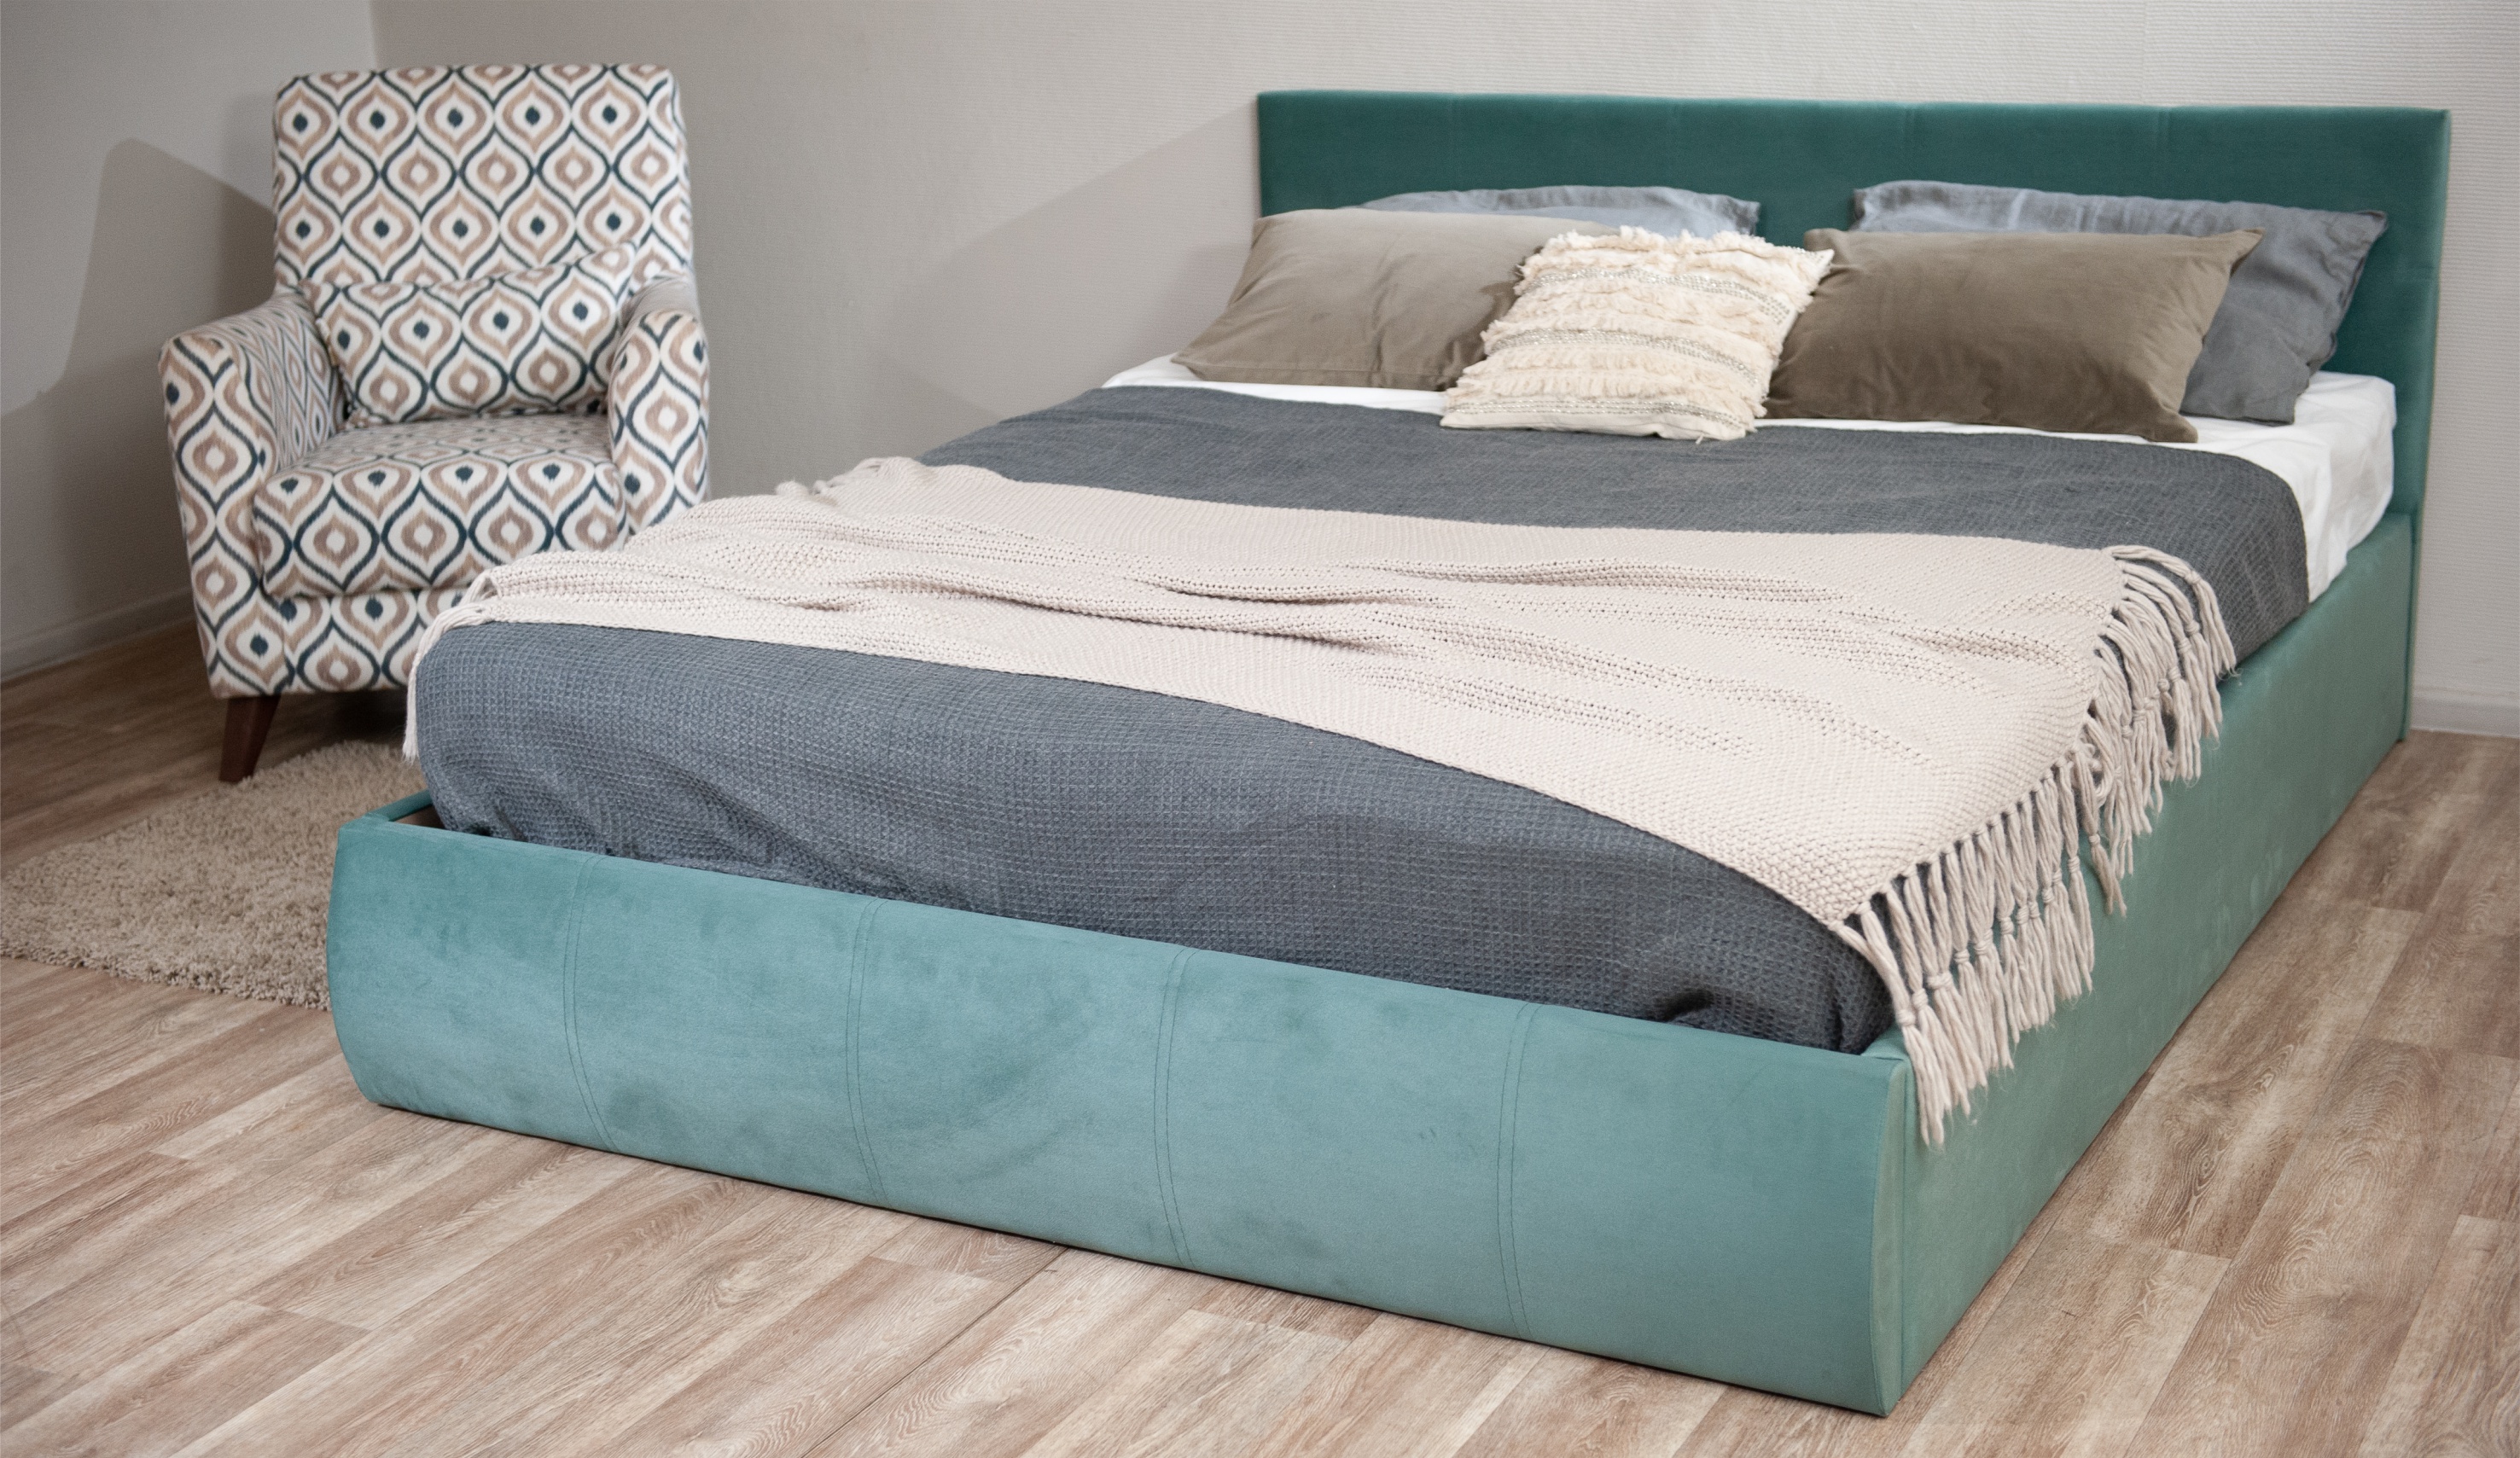 Мягкая кровать Верона 140*200 (подъемник), цвет bingo mint - фото 6